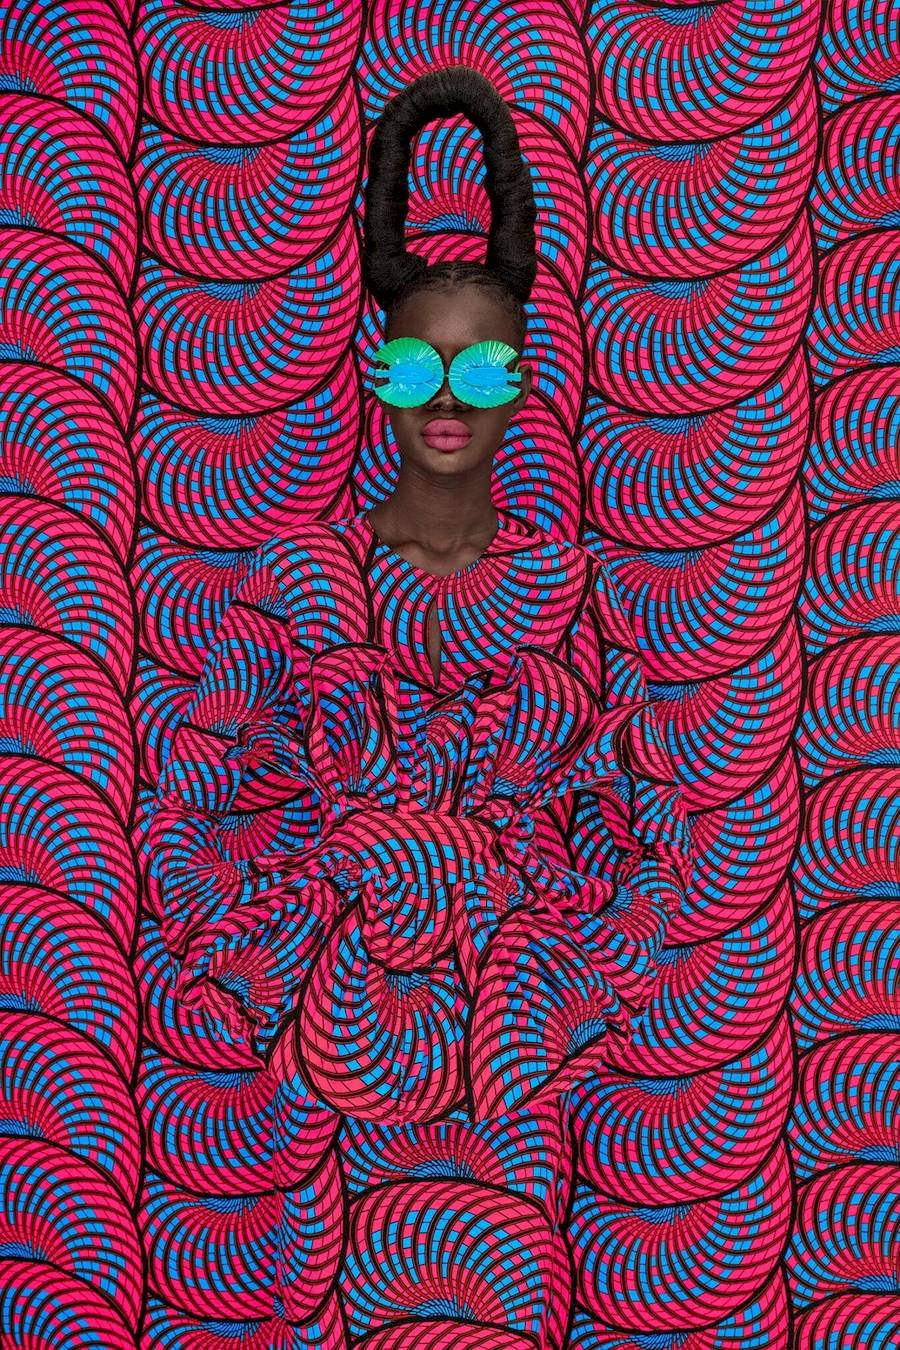 Através das suas lentes, Thandiwe Muriu, uma fotógrafa visionária de Nairobi, no Quênia, nos convida a uma odisseia colorida e introspectiva. Com um compromisso de redefinir o retrato africano contemporâneo, o trabalho de Thandiwe Muriu mostra a sua proeza artística e cria um testemunho da autonomia das mulheres na sociedade moderna.